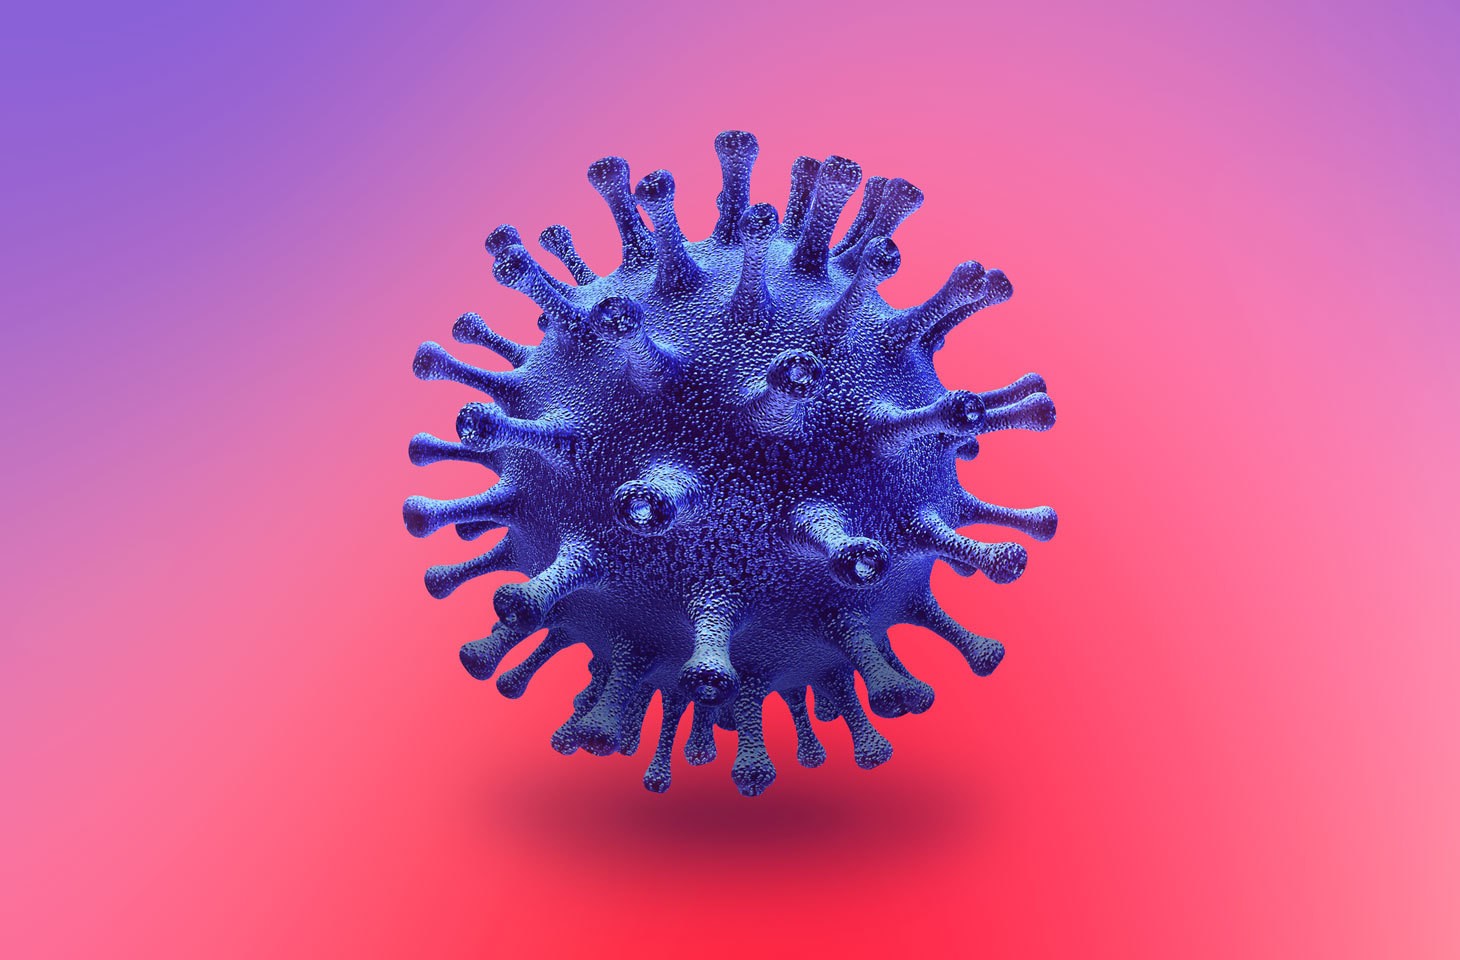 Китайские ученые обнаружили штамм гриппа, способный вызвать пандемию